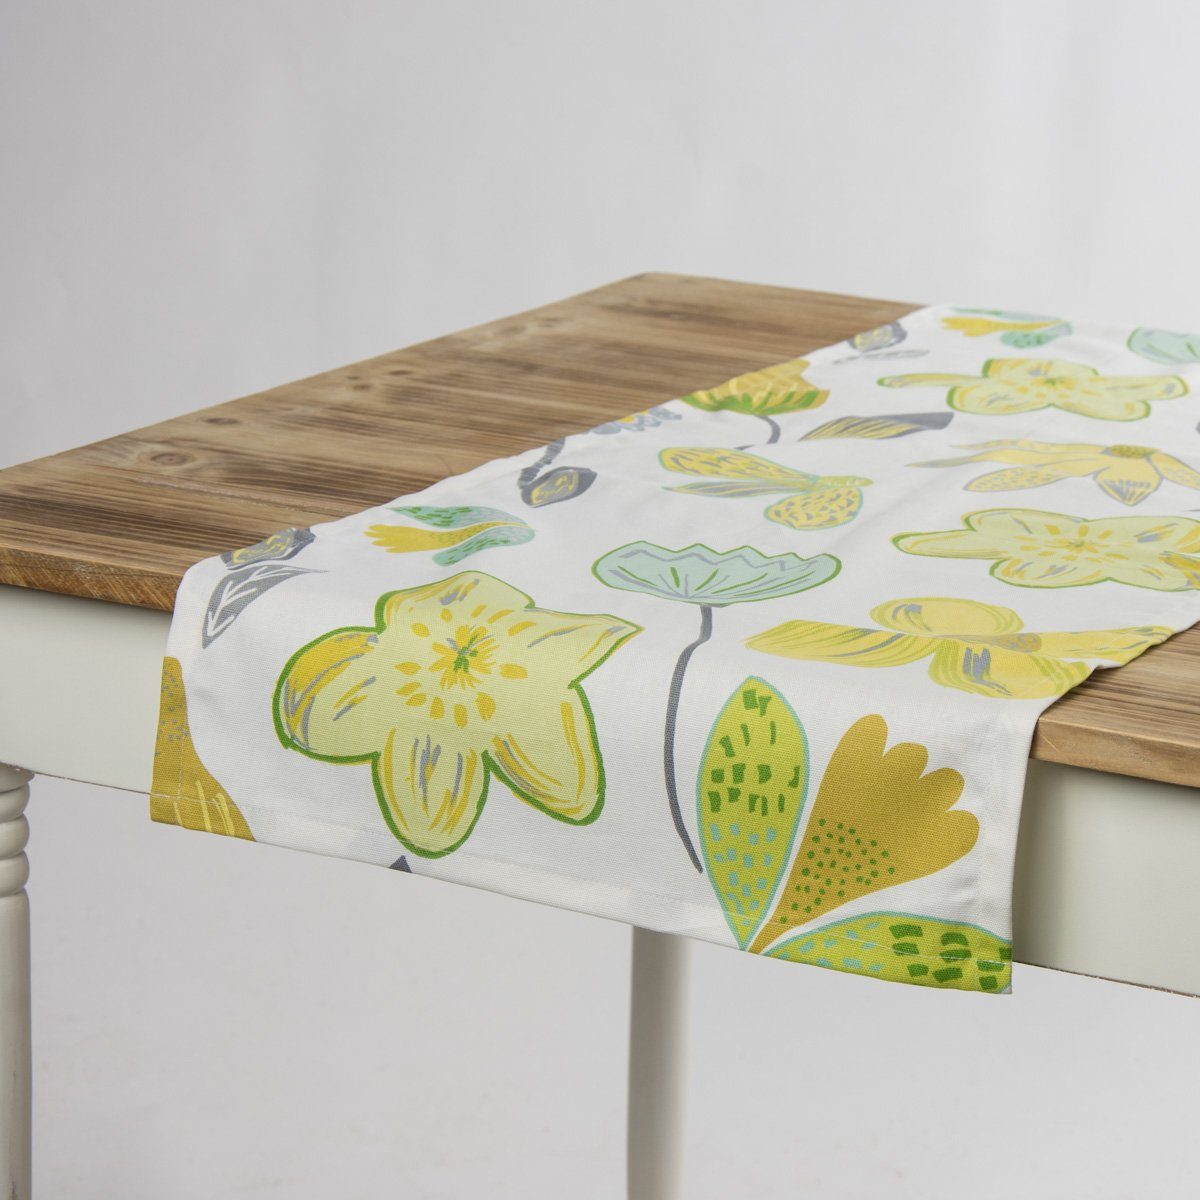 SCHÖNER LEBEN. Tischläufer Tischläufer Coconut Grove Blumen grün gelb 40x160cm, handmade